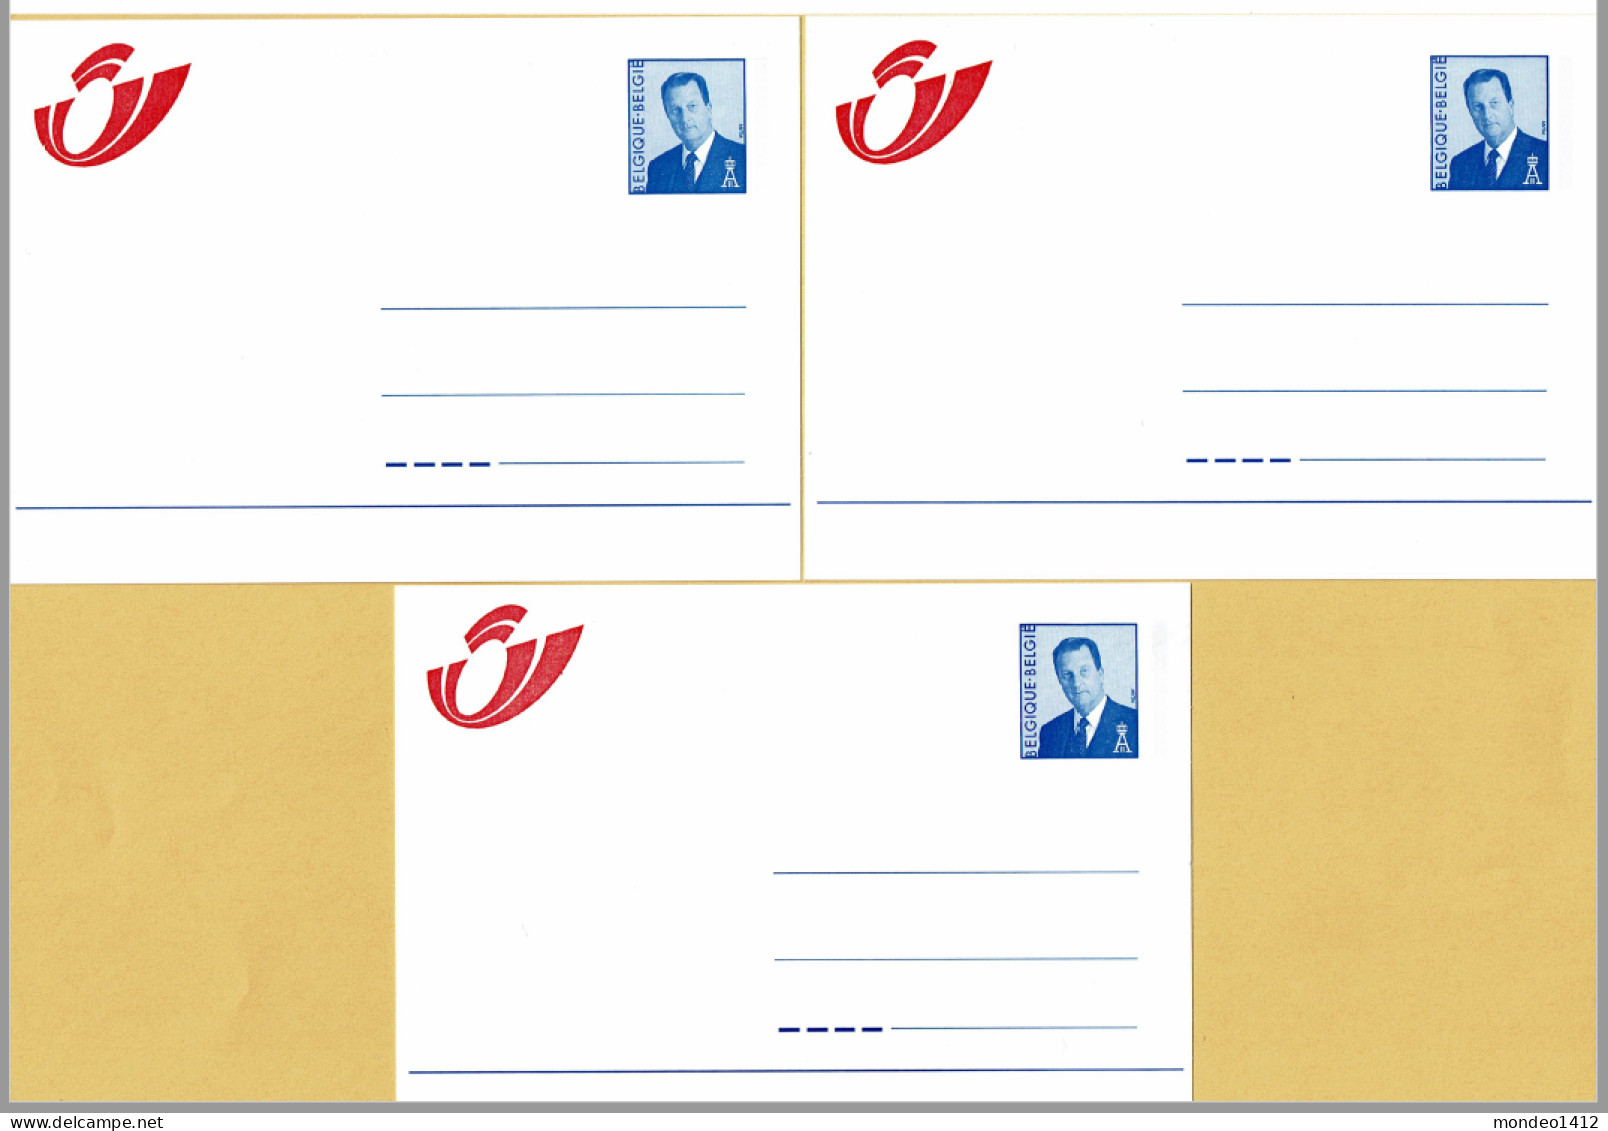 1998 - Briefkaarten - Mutapost Nieuw Postlogo - Adresverandering - Compleet N-F-D - Adreswijziging